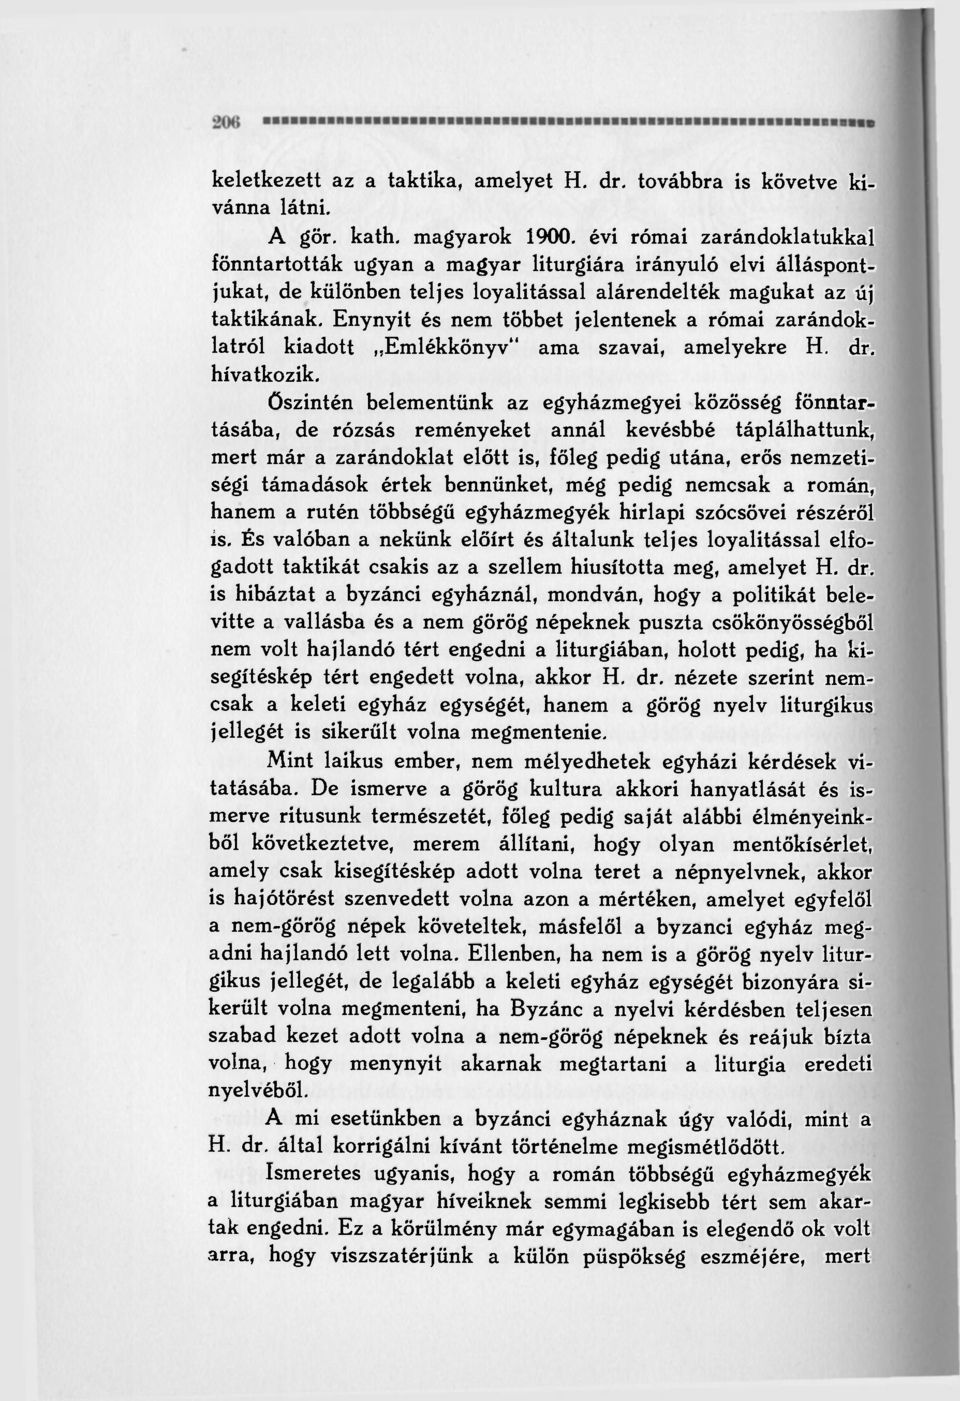 Enynyit és nem többet jelentenek a római zarándoklatról kiadott Emlékkönyv" ama szavai, amelyekre H. dr. hivatkozik.